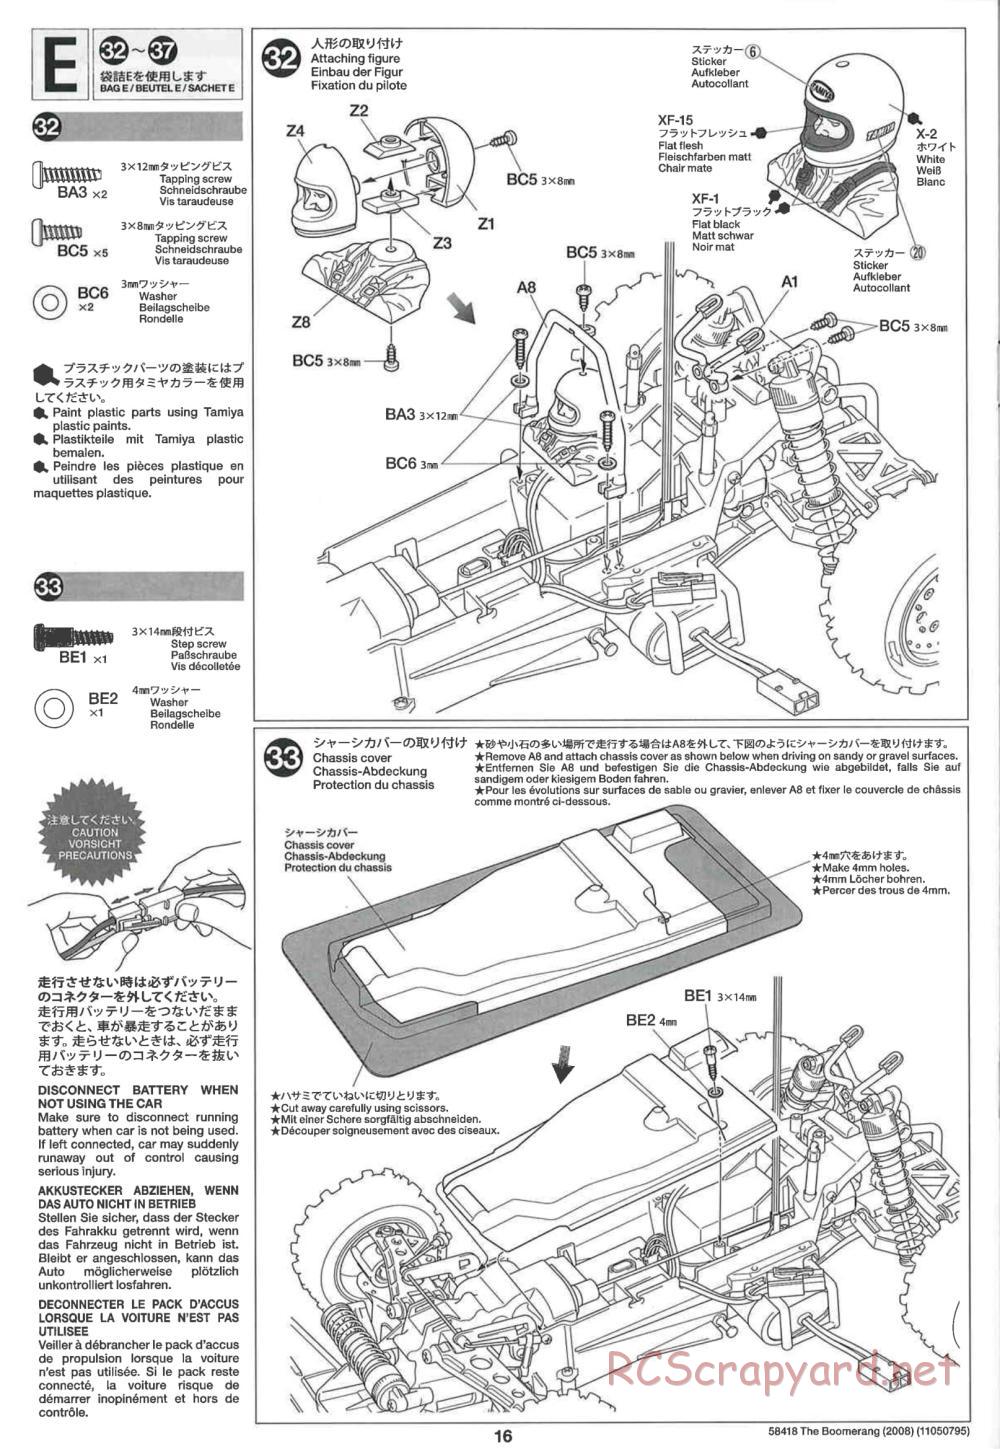 Tamiya - The Boomerang 2008 Chassis - Manual - Page 16